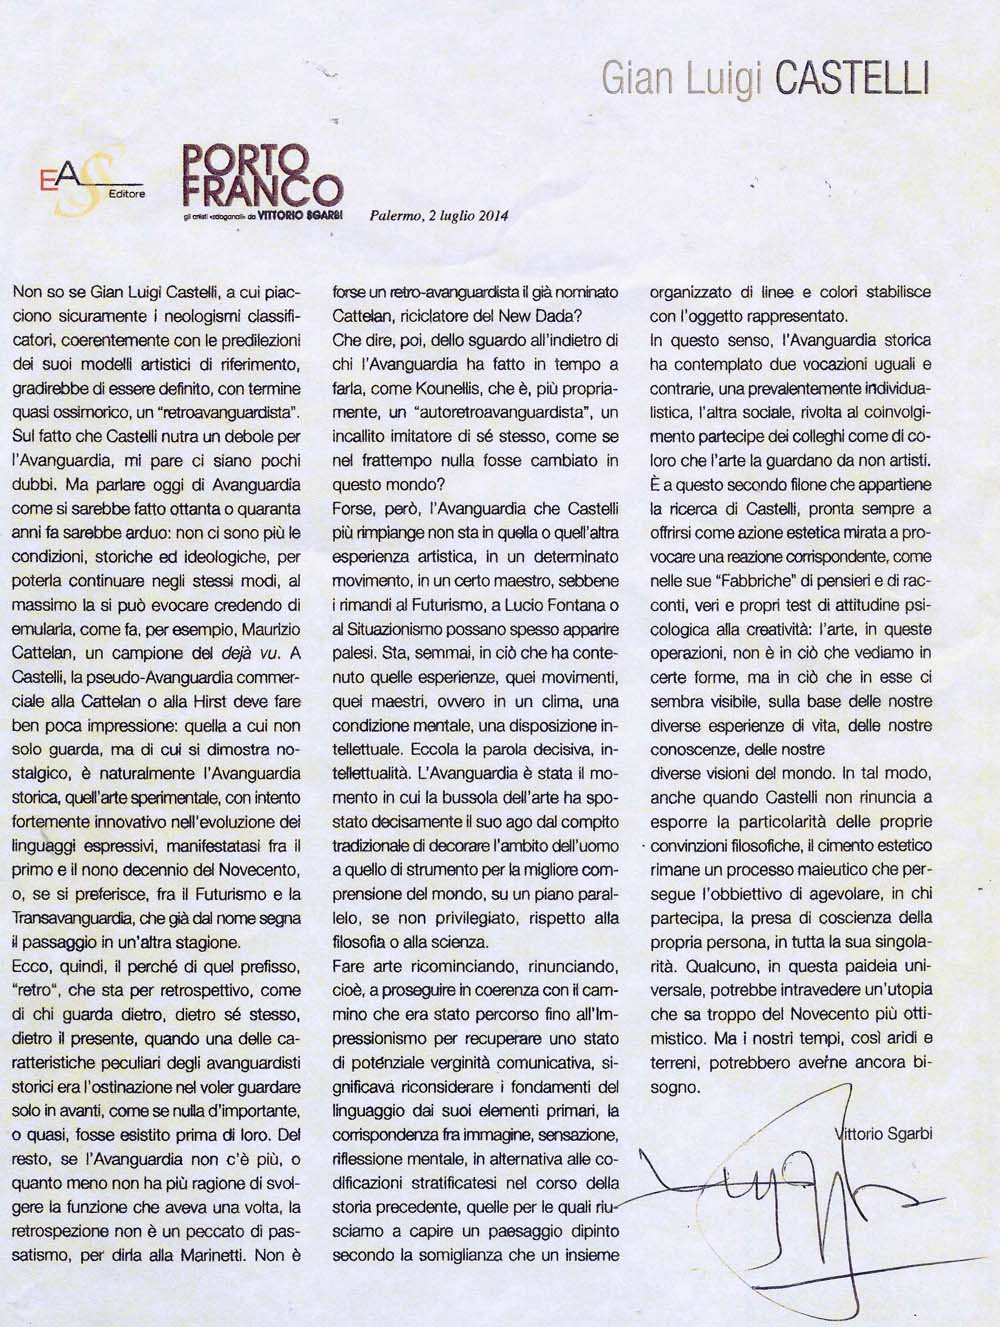 Critica e inquadramento storico di Vittorio Sgarbi